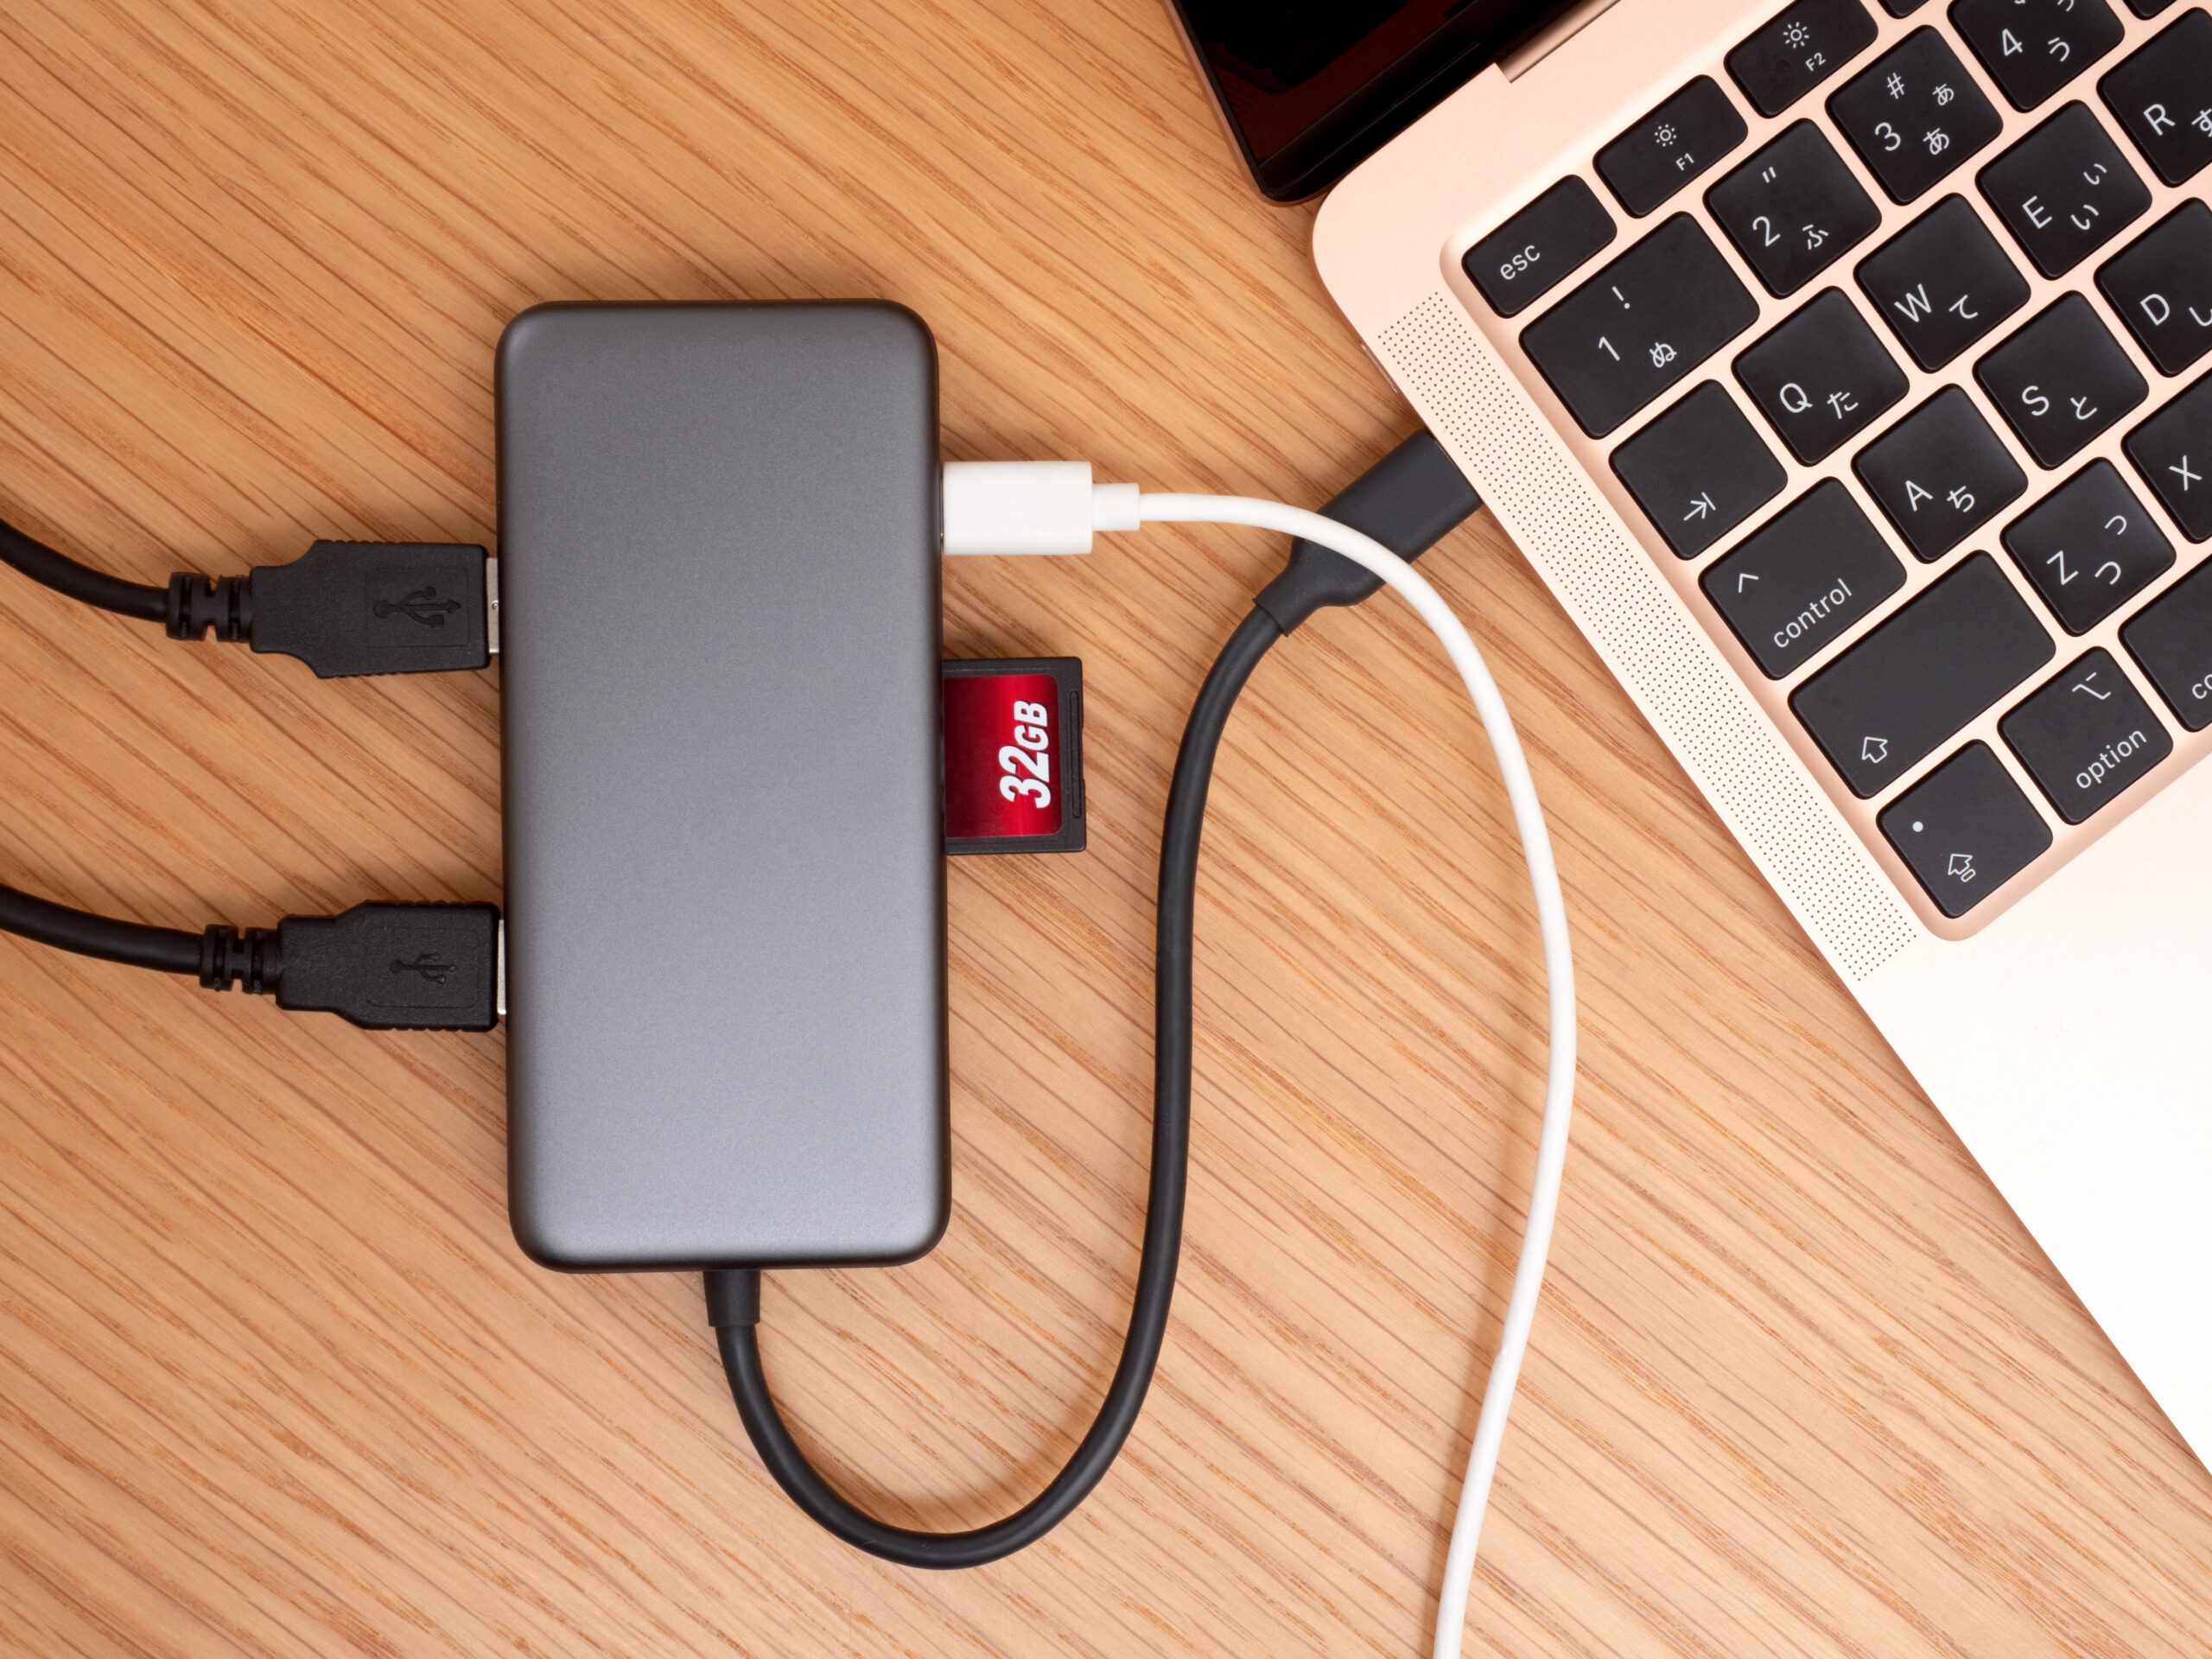 USB Type-Cは変換できる？どんなアダプタやハブなどが必要？